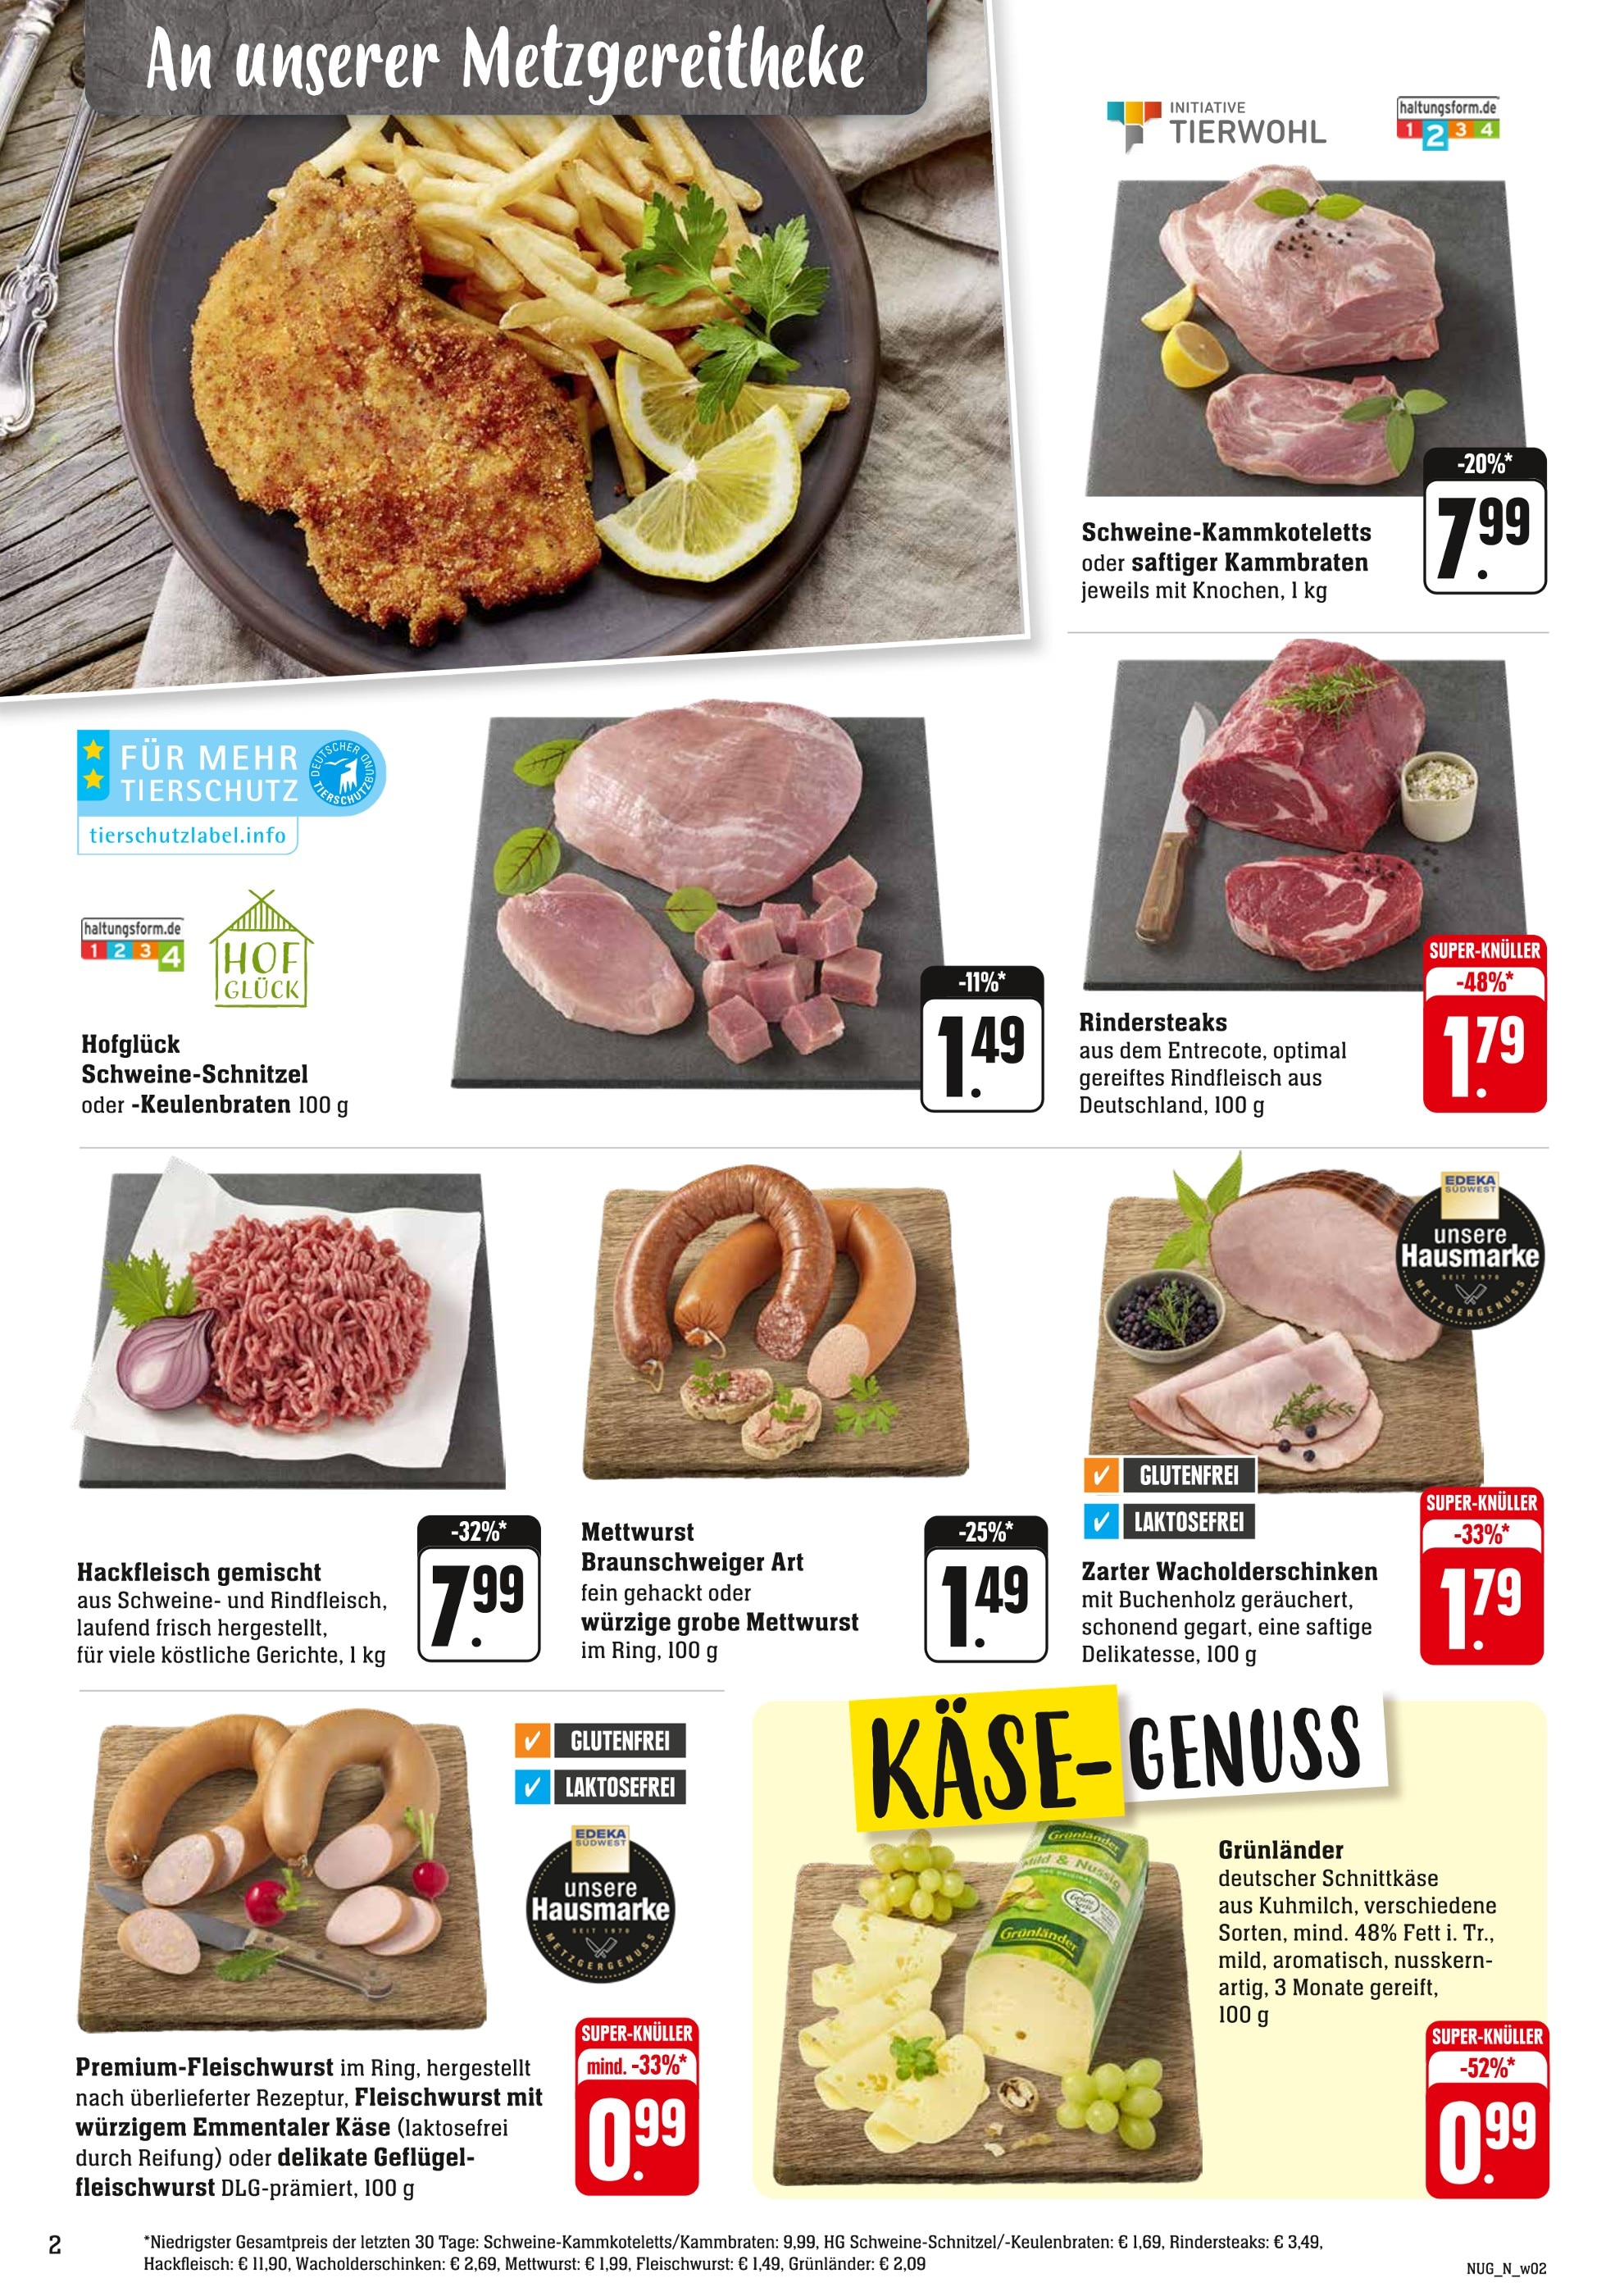 Schweineschnitzel kaufen in Mannheim - günstige Mannheim Angebote in